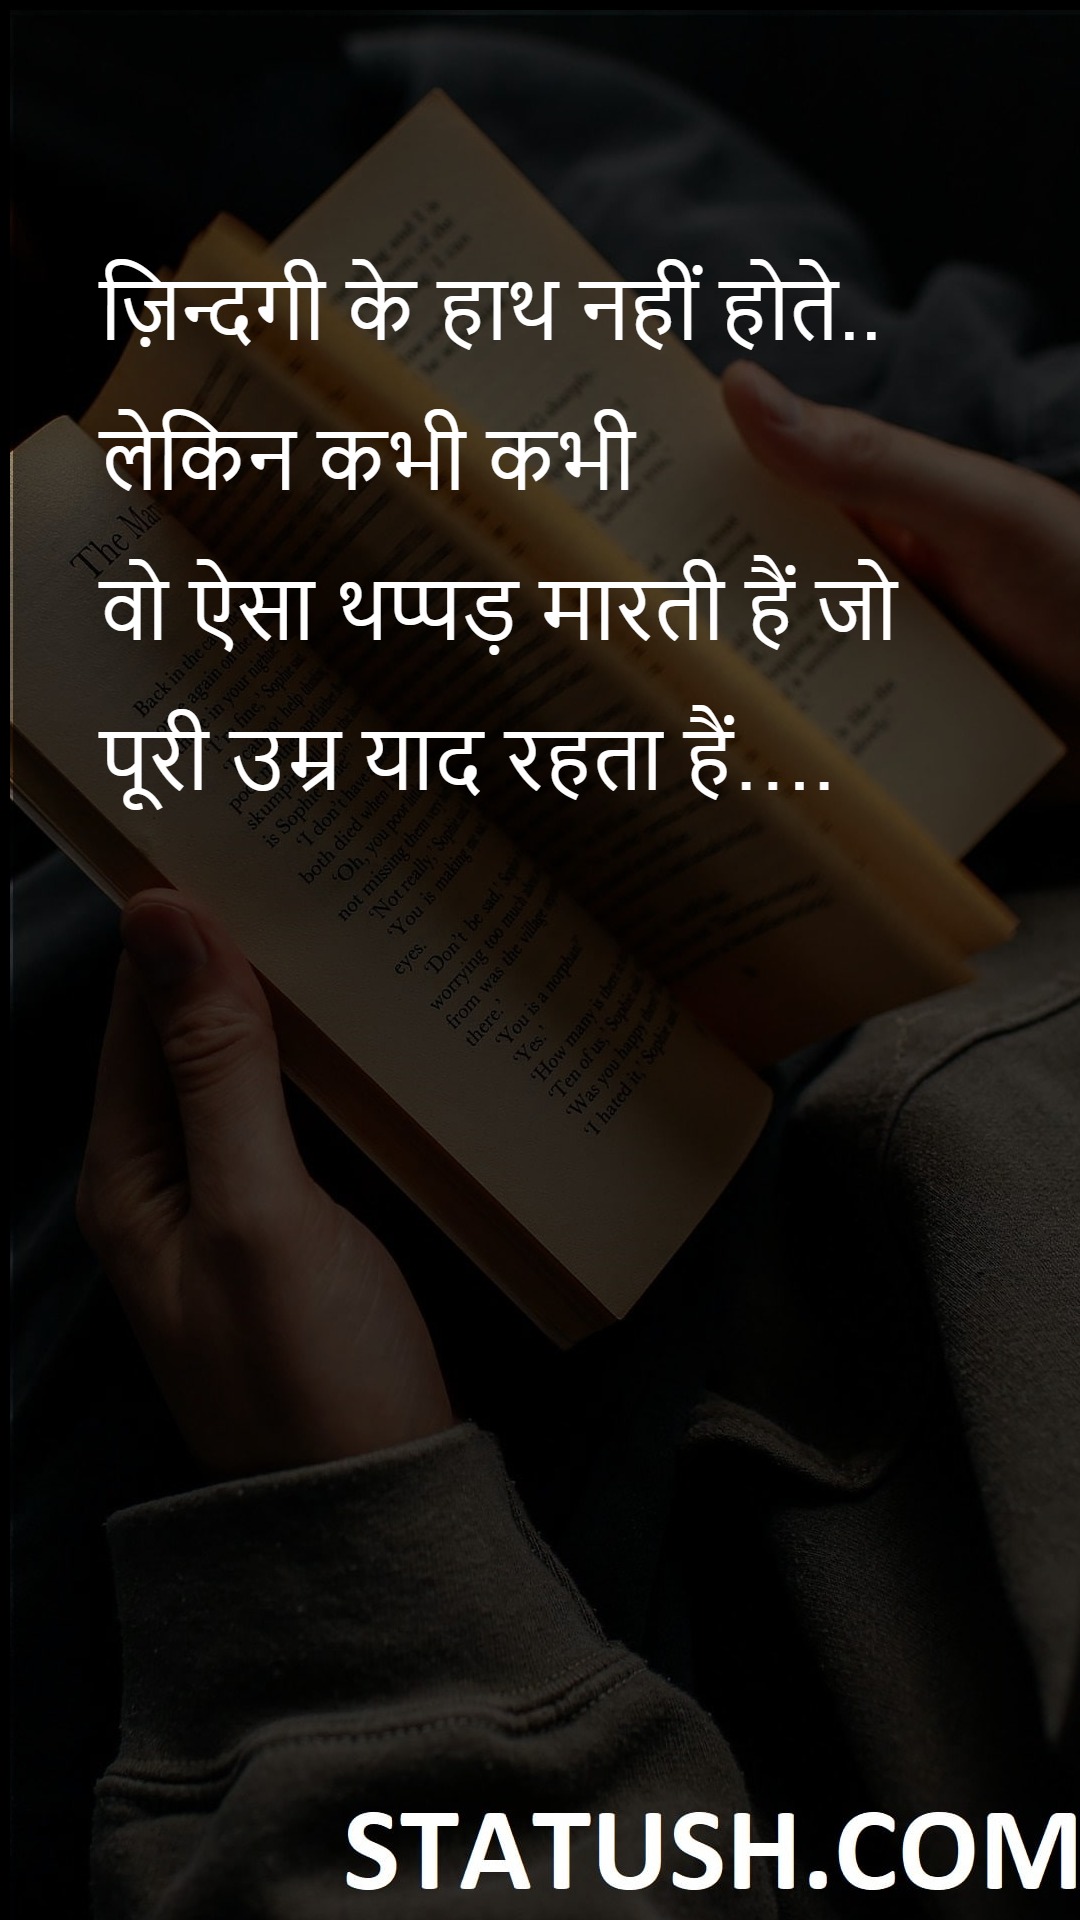 Life has no hands Hindi Quotes at statush.com